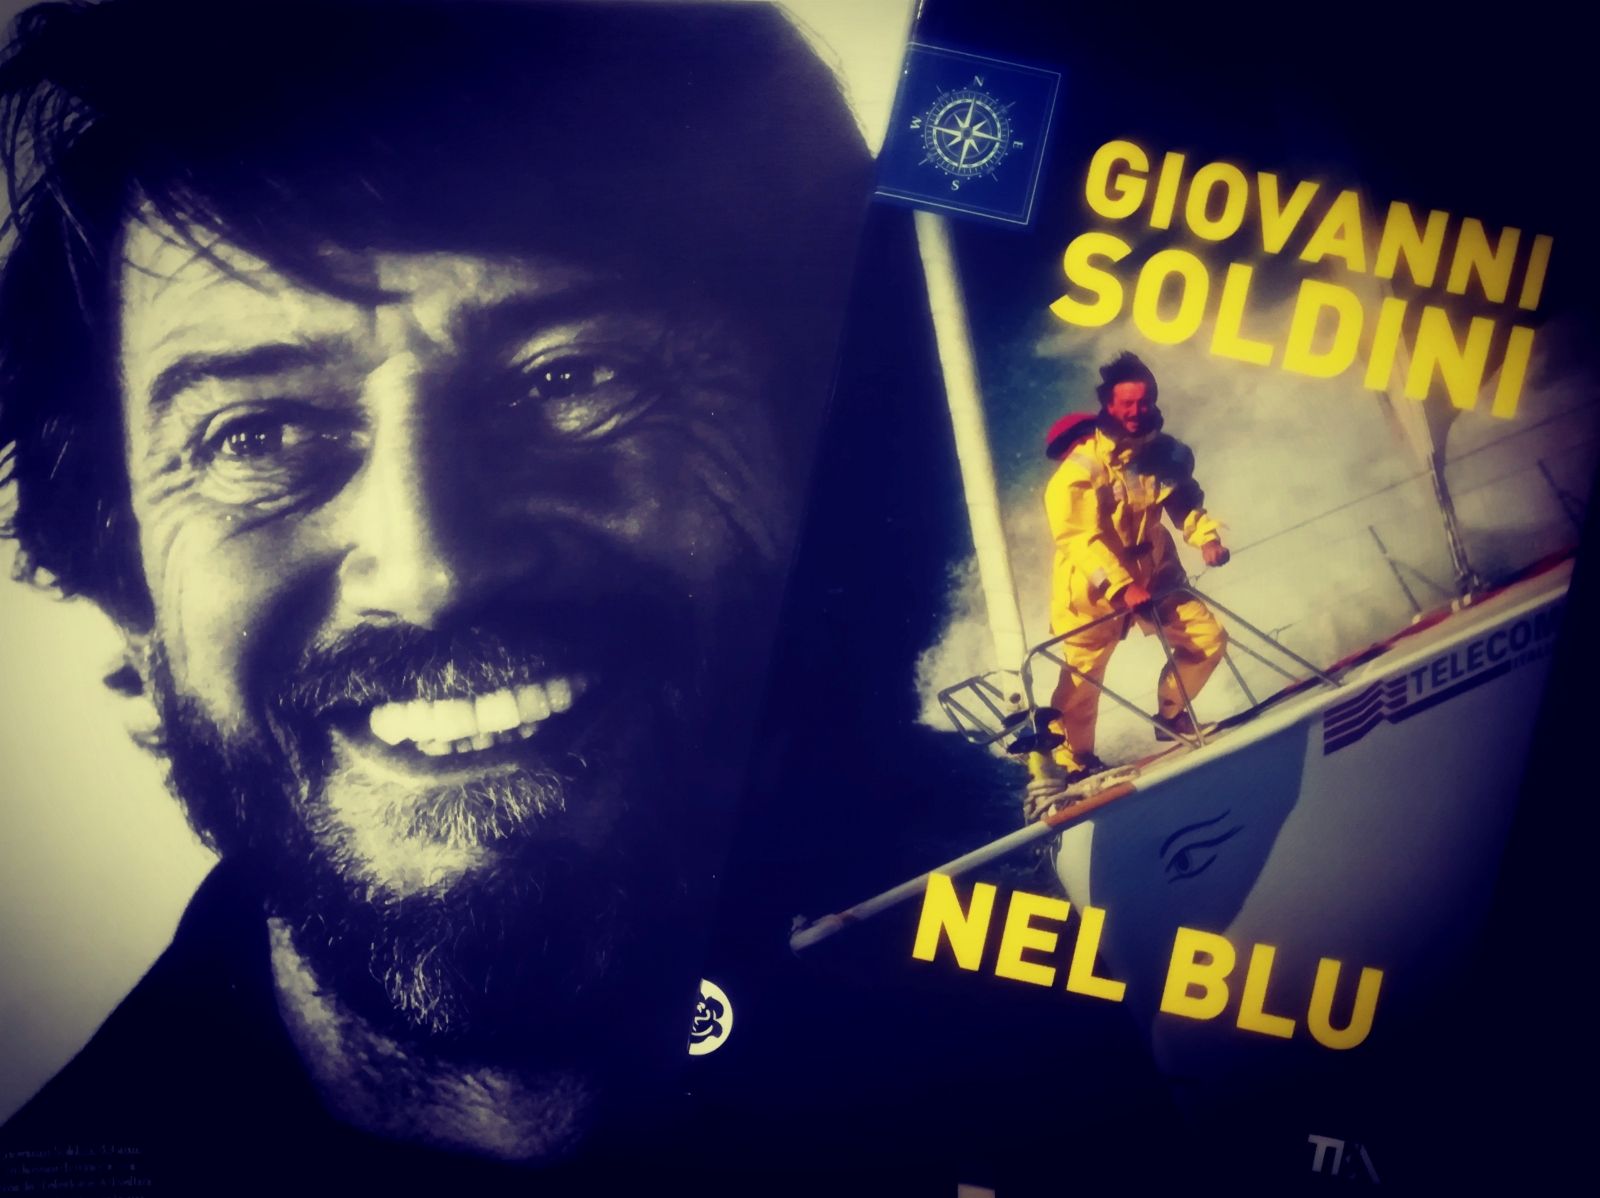 Giovanni Soldini ci porta "Nel blu" - Libri dal Blog del Mare